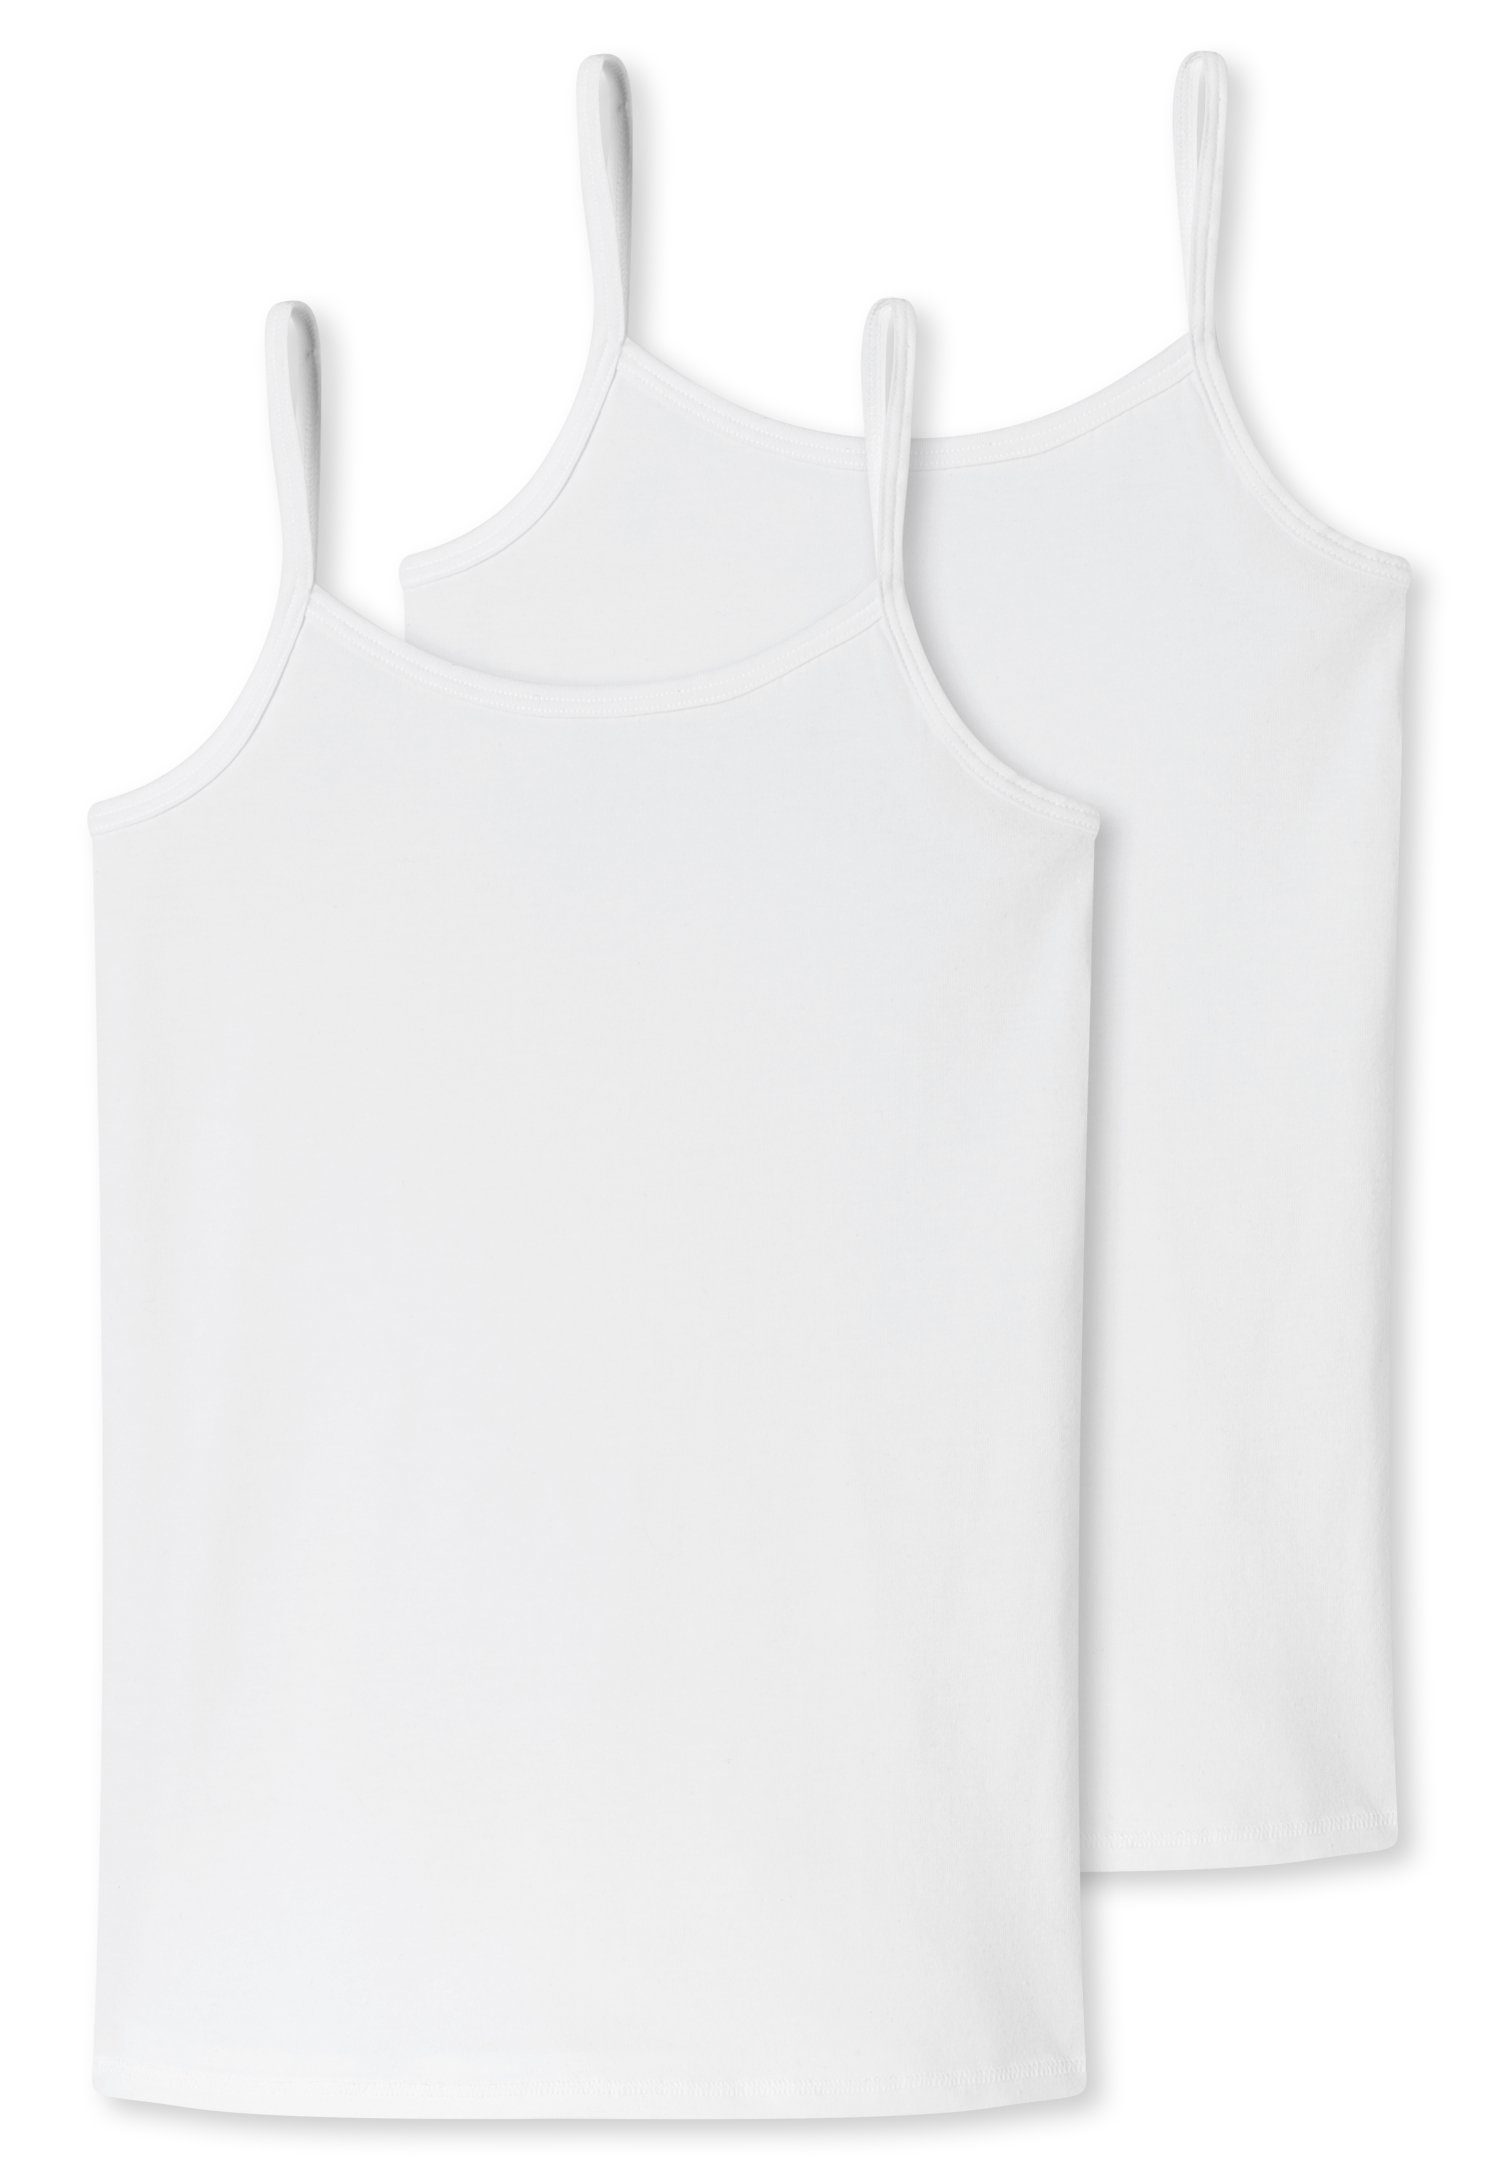 Unterhemd Schiesser Trägern weiß (2er-Pack) mit schmalen